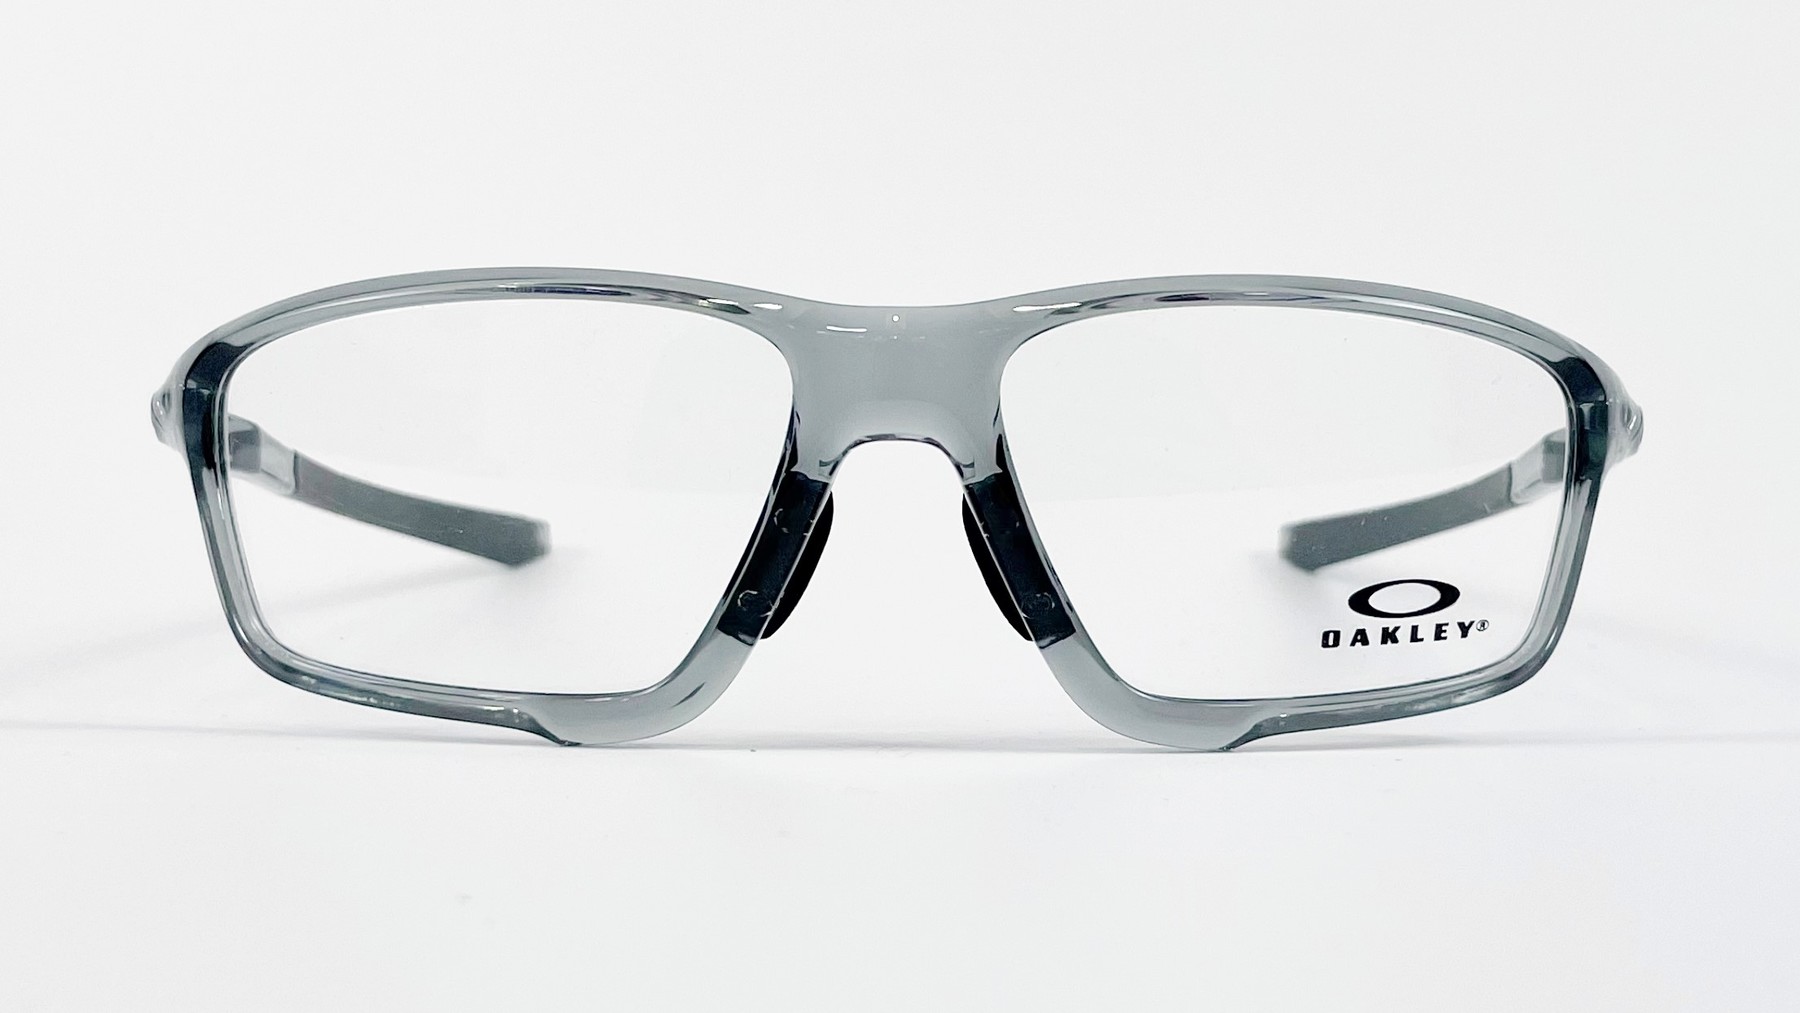 OAKLEY OX8080-0458, Korean glasses, sunglasses, eyeglasses, glasses